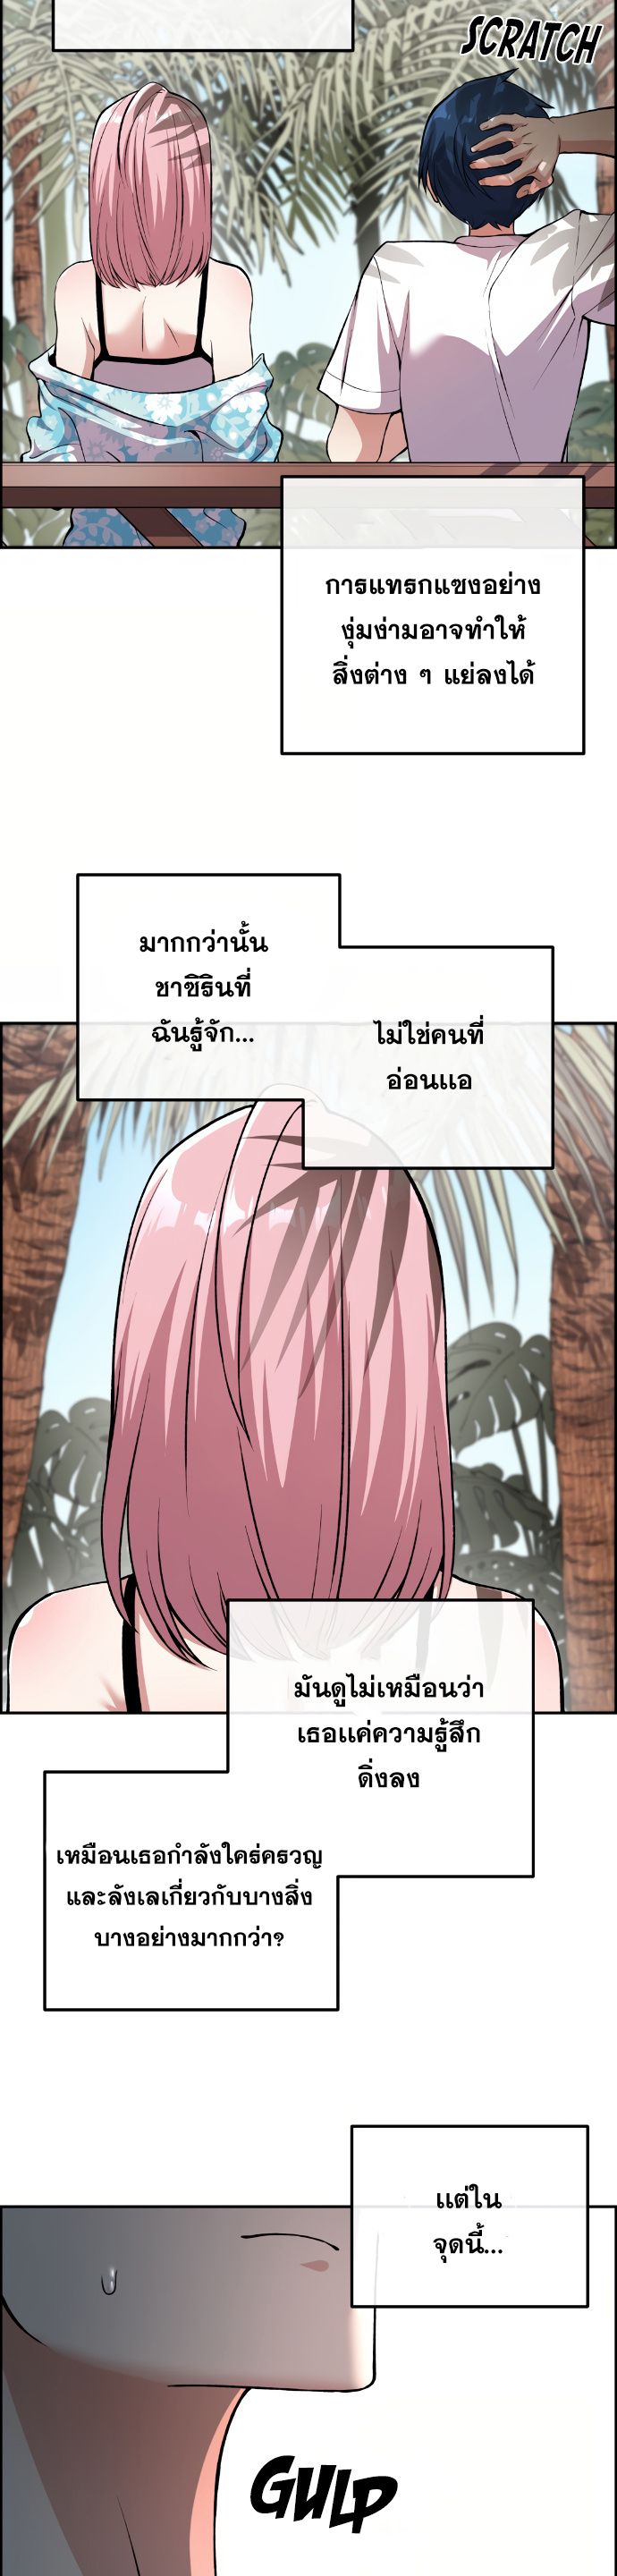 Webtoon Character Na Kang Lim ตอนที่ 128 (12)